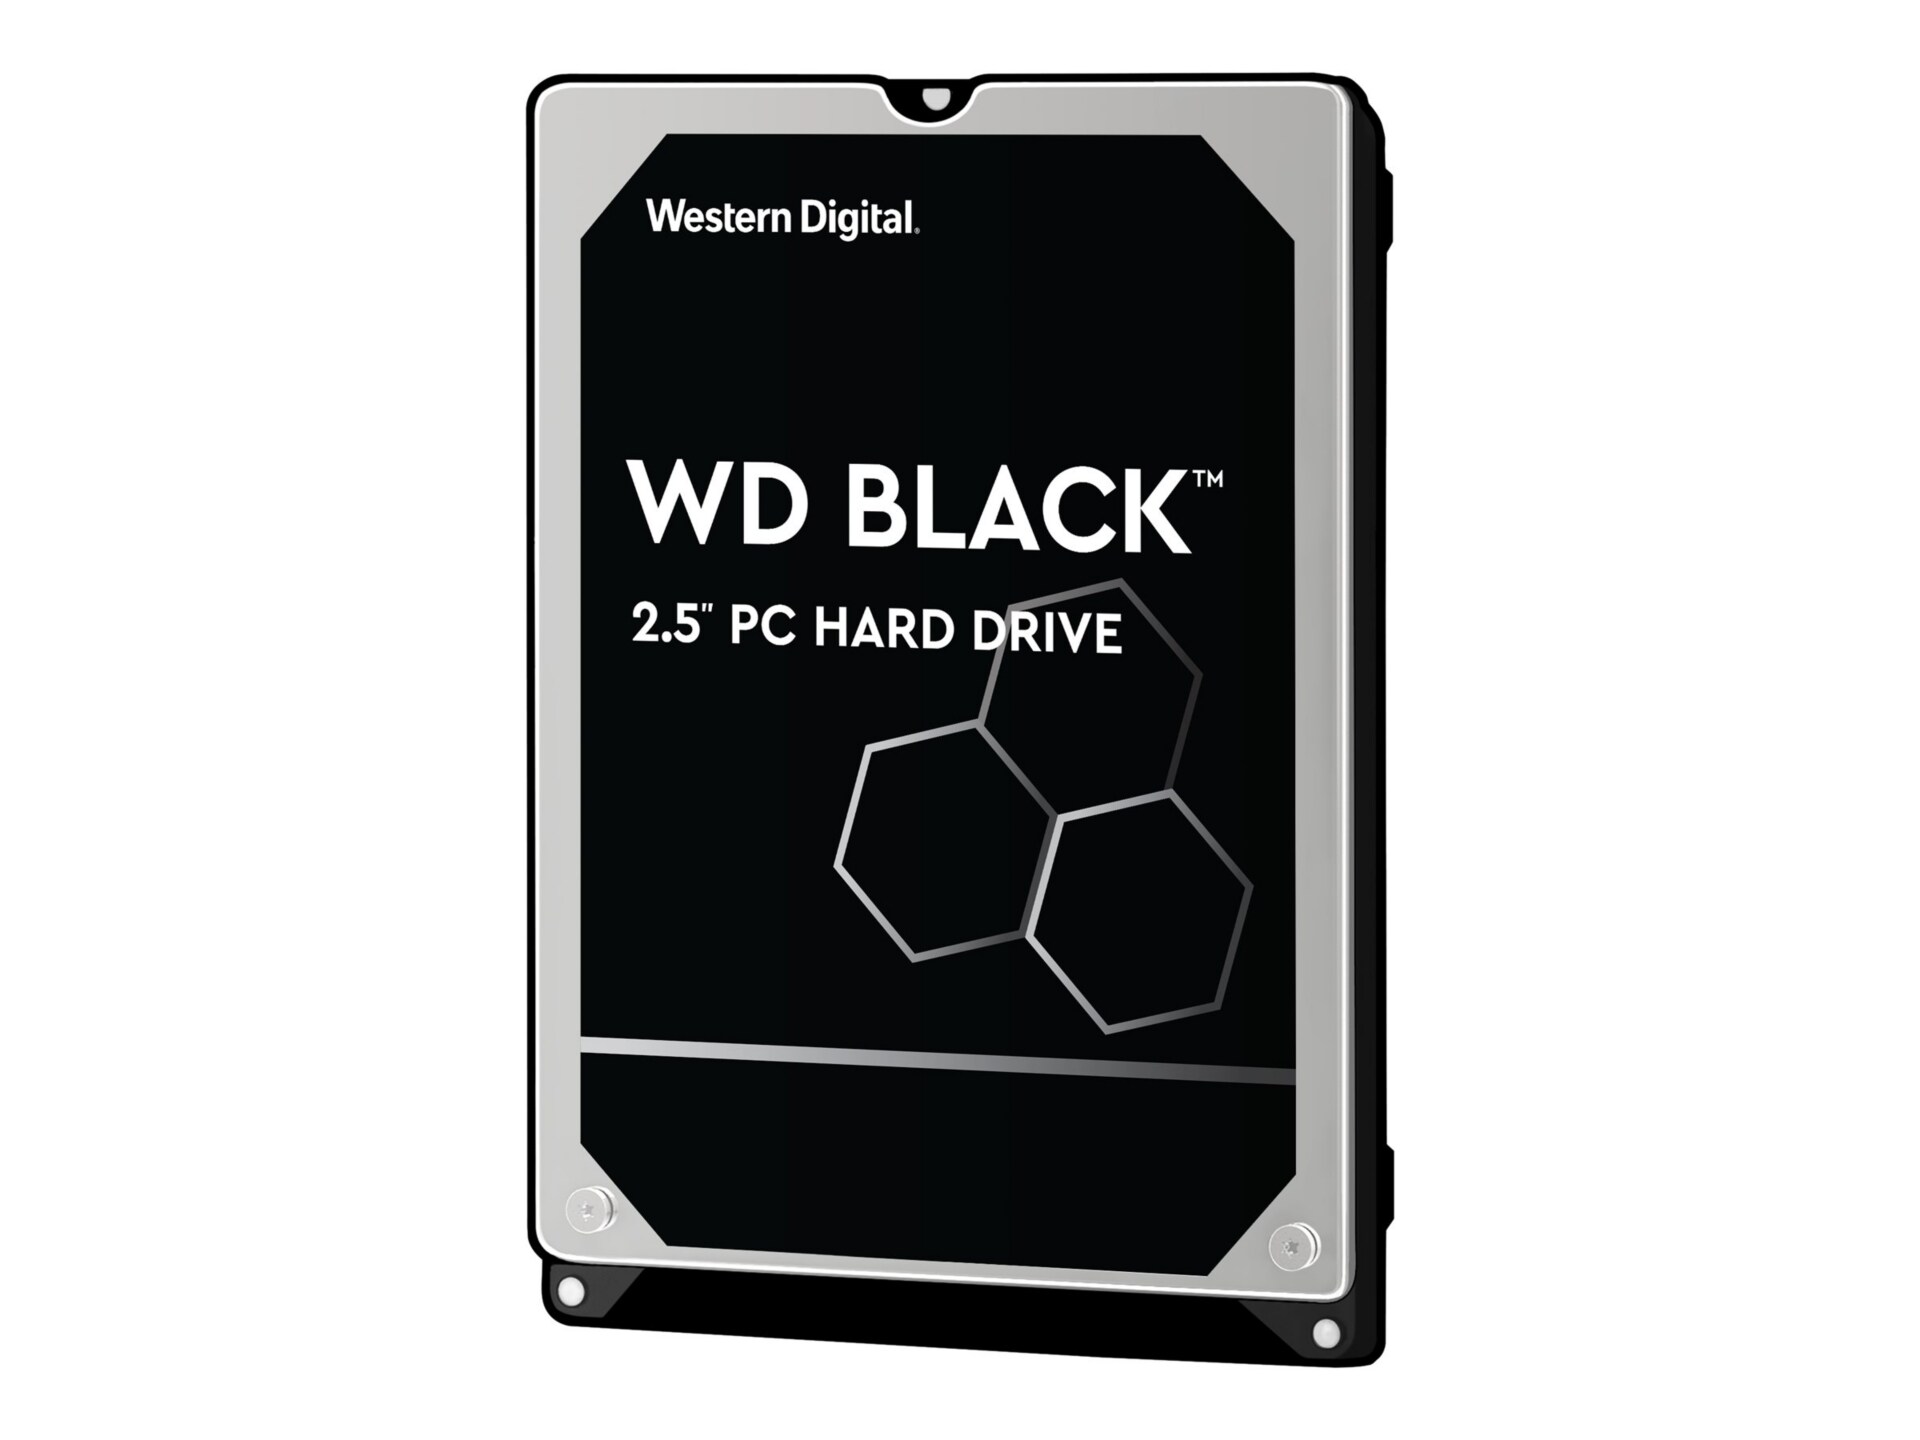 WD Black Performance Hard Drive WD5000LPLX - hard drive - 500 GB - SATA 6Gb